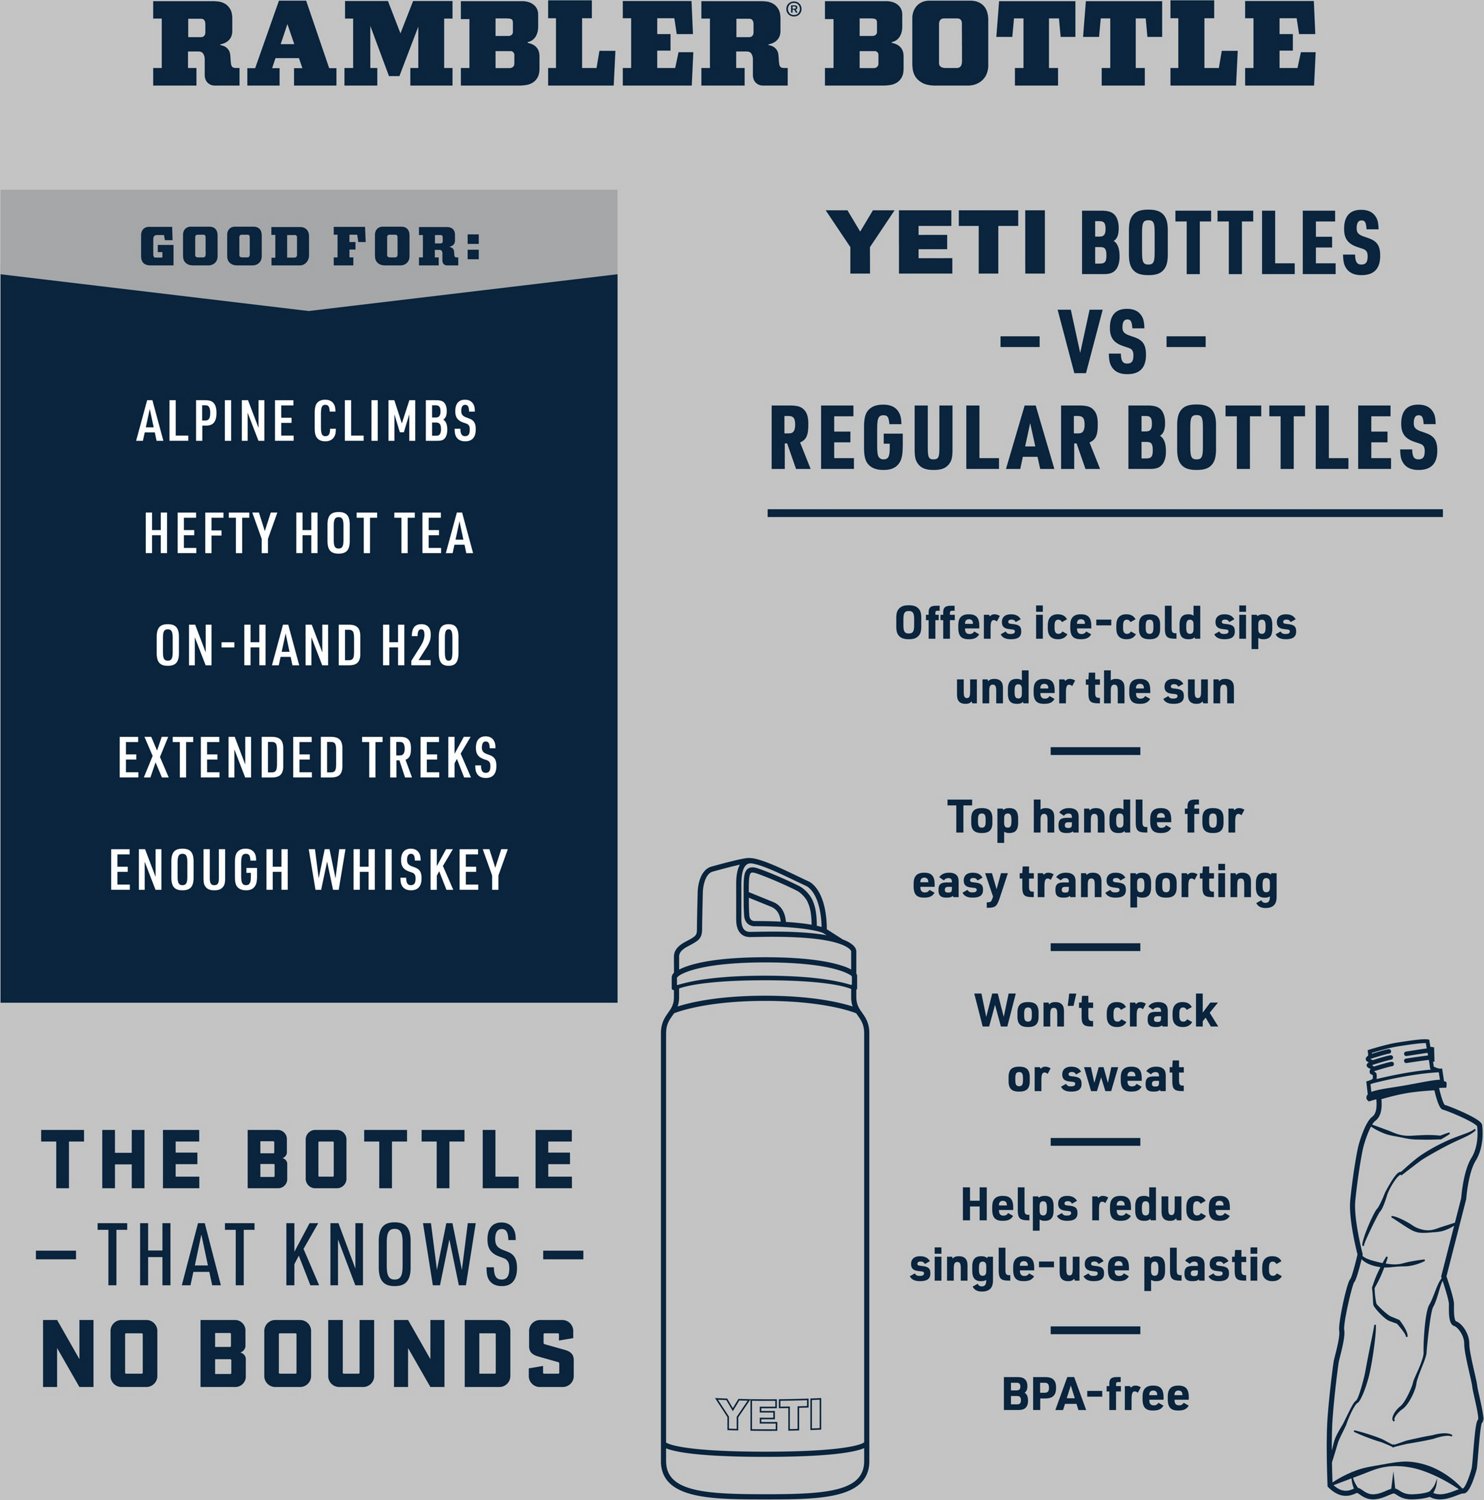 YETI Rambler 36oz Bottle